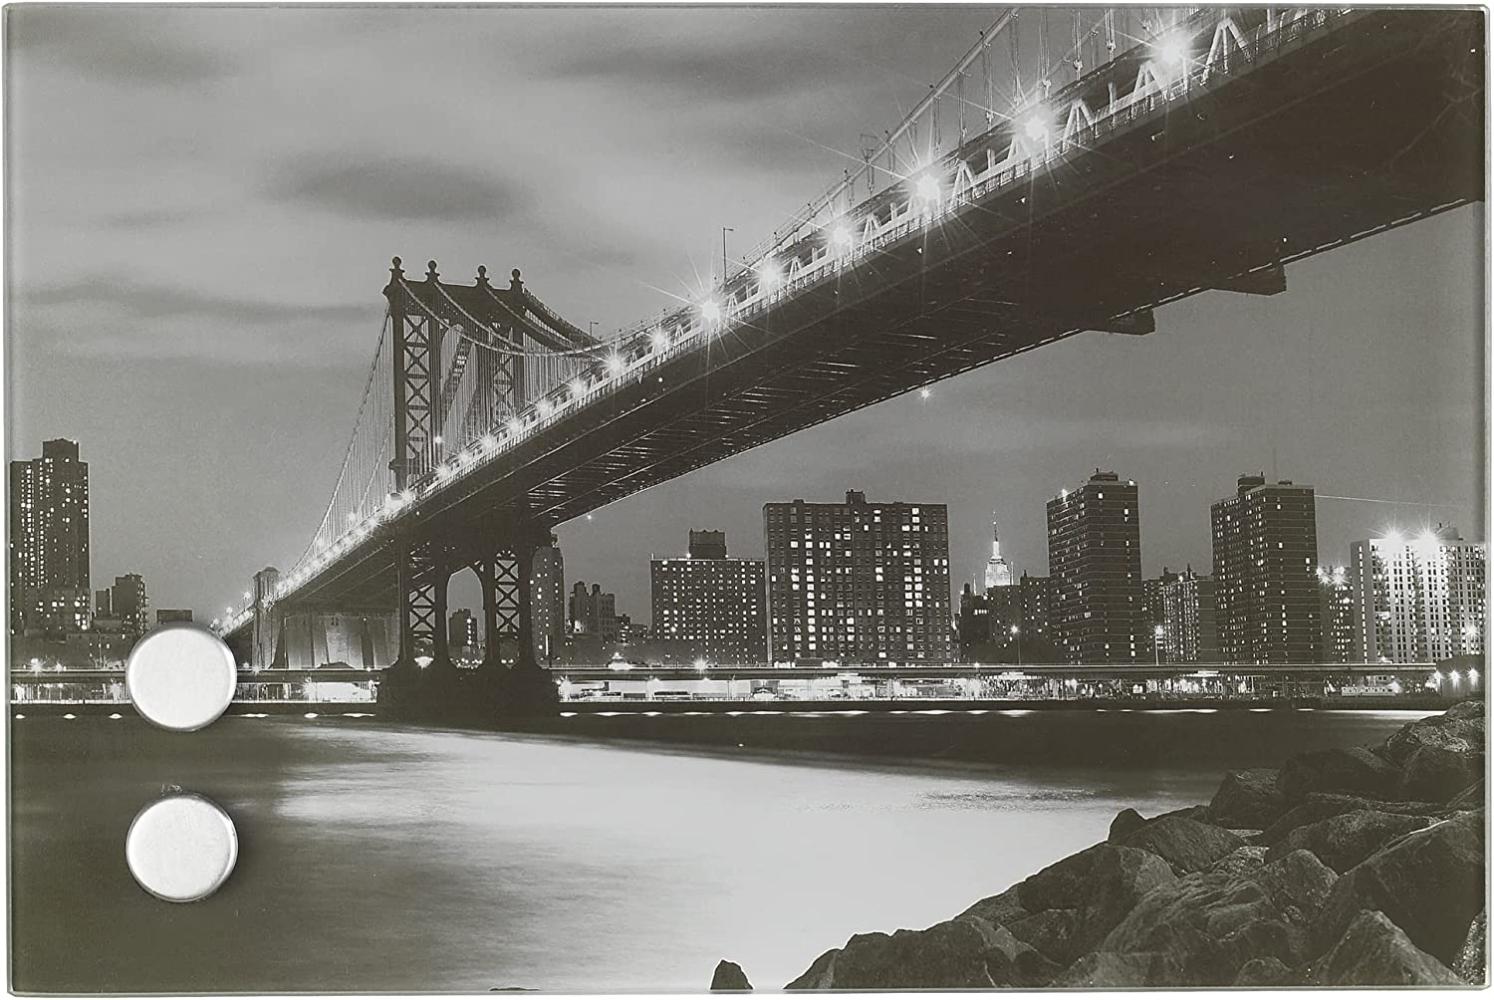 WENKO Schlüsselkasten Manhattan Bridge aus mattiertem, rostfreiem Edelstahl mit integriertem Glasbild aus gehärtetem Glas, mit 17 Edelstahl-Haken, magnetisches Memobard inkl. 2 Magnete, 30 x 20 x 5 cm Bild 1